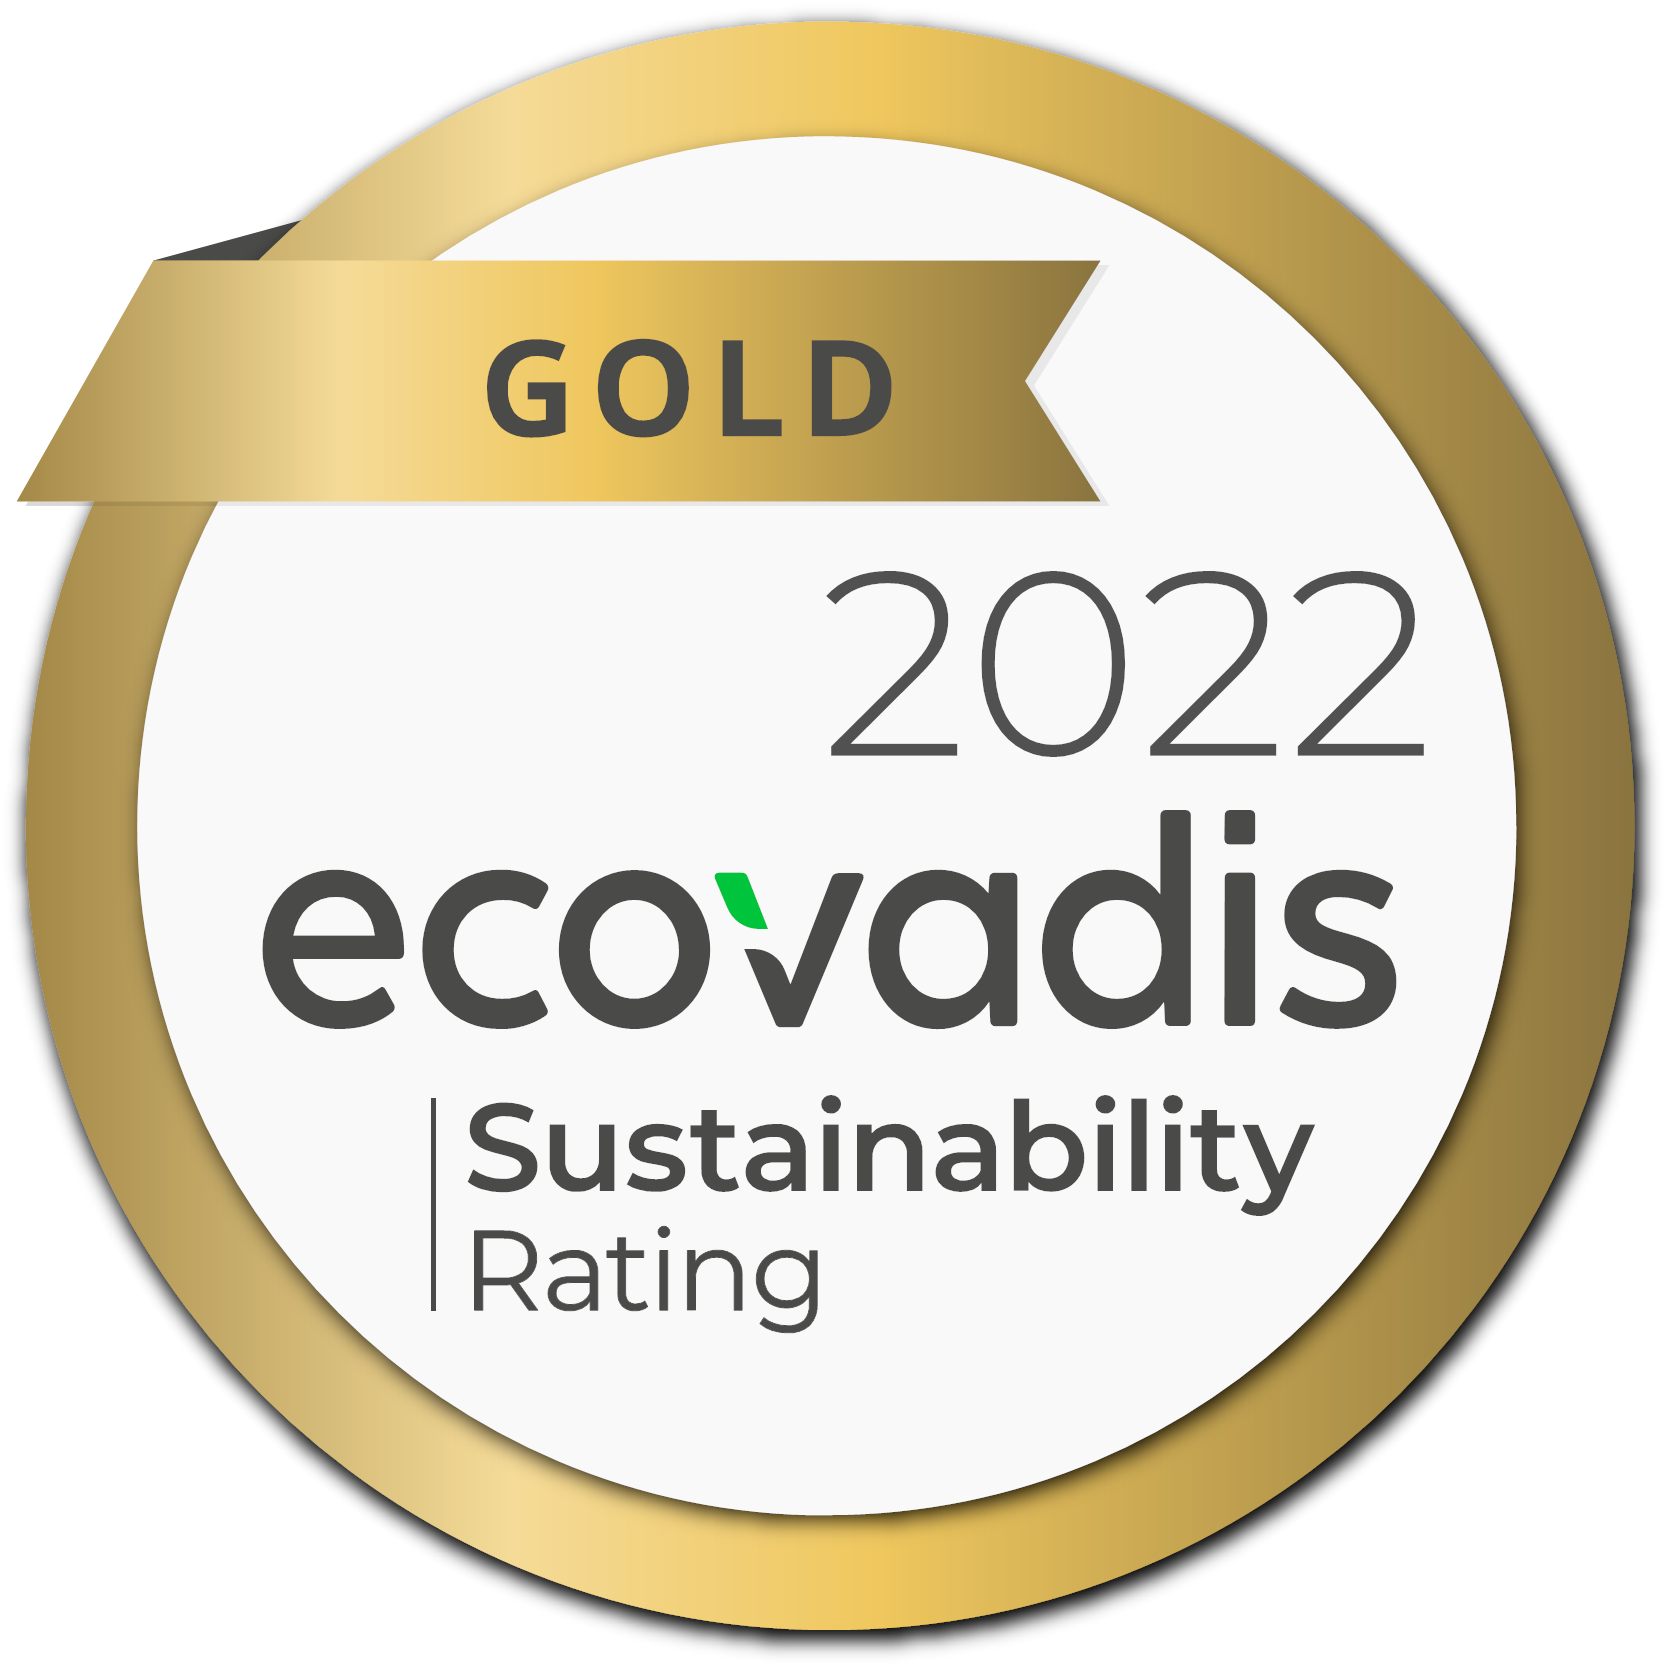 Cote de durabilité Gold 2022 Ecovadis